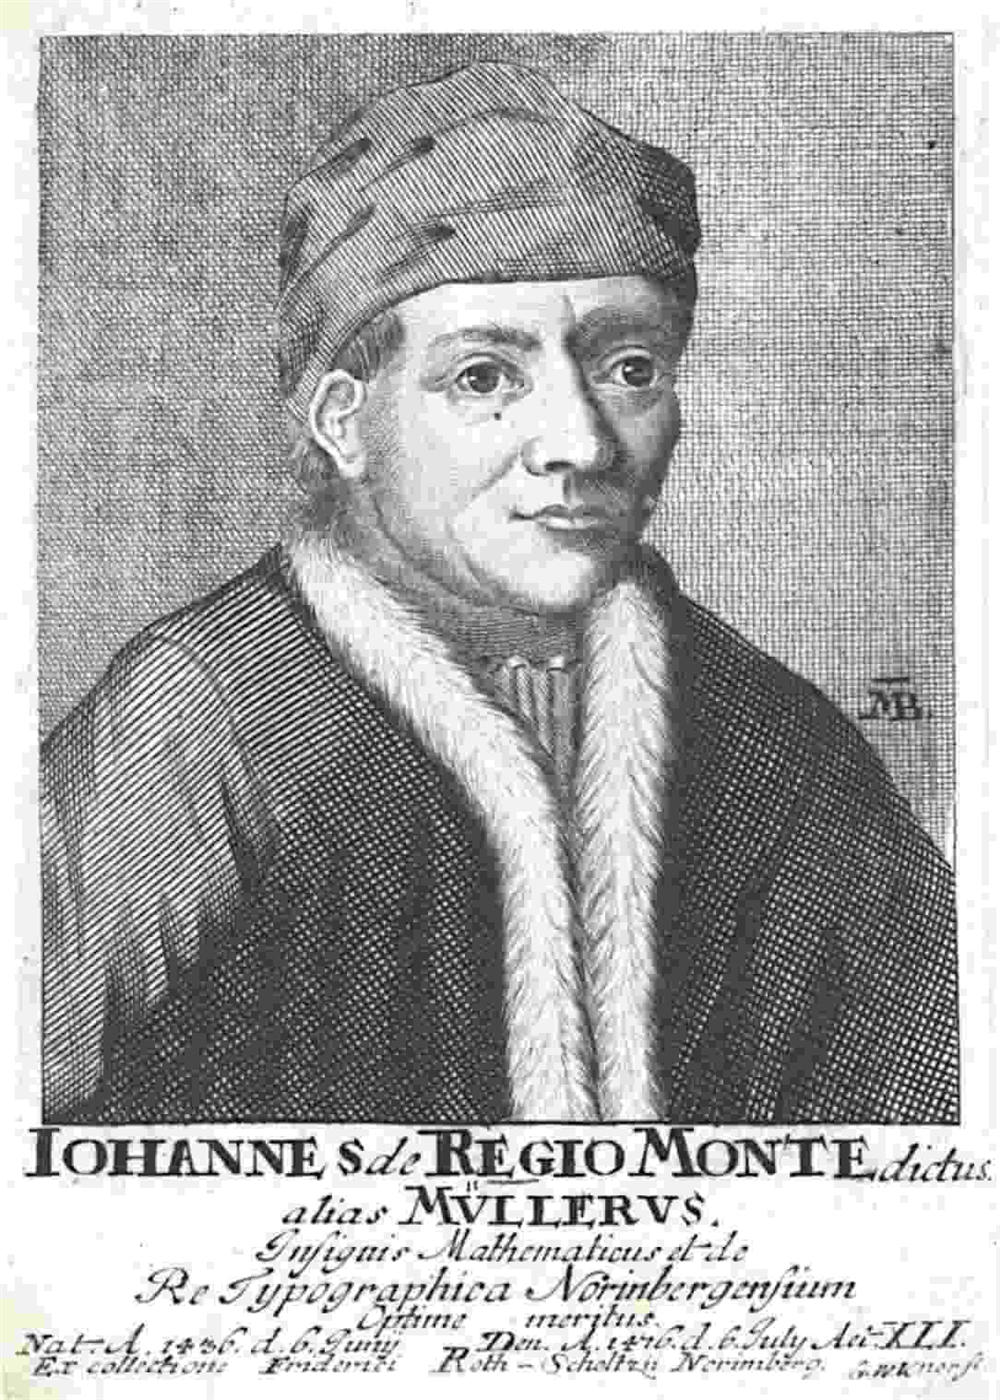 Regiomontanus, tên Latinh của Johannes Müller, đã tạo ra Ephemerides để ghi lại quỹ đạo của các vật thể thiên văn. Cùng với các hướng dẫn khác, công trình này đã thúc đẩy ngành khí tượng thiên văn hiện đại, tiền thân của dự báo thời tiết hiện đại.